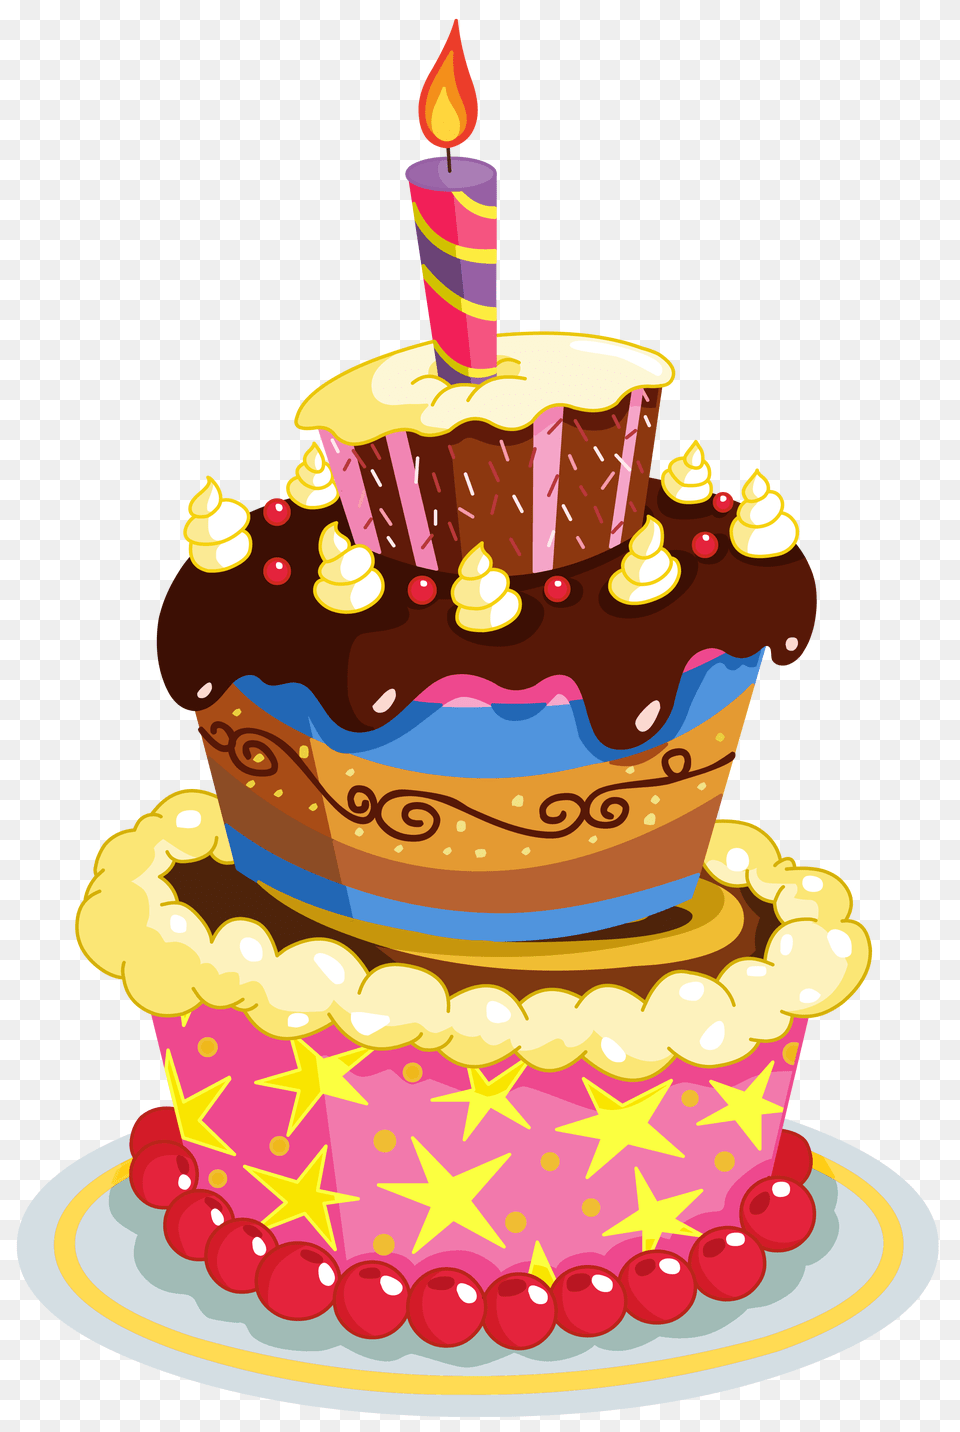 Clip Art Birthday Happy Birthday Happy, Birthday Cake, Cake, Cream, Cupcake Png Image